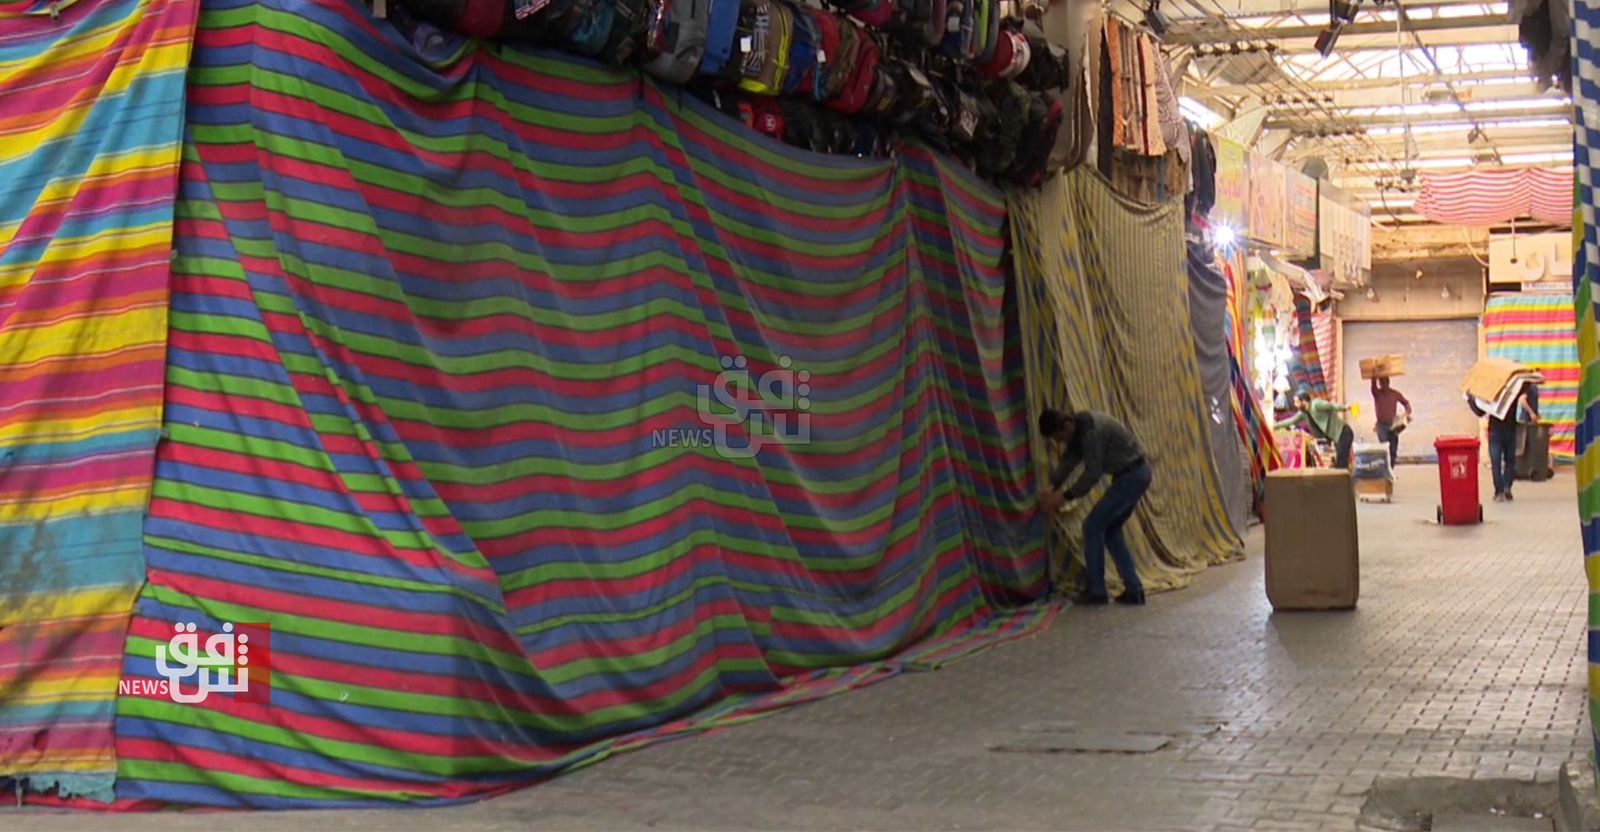 يغلقون محالهم بـ"قطع قماش".. دهوك تمنع "تقليداً غريباً" في أسواق المحافظة (صور)